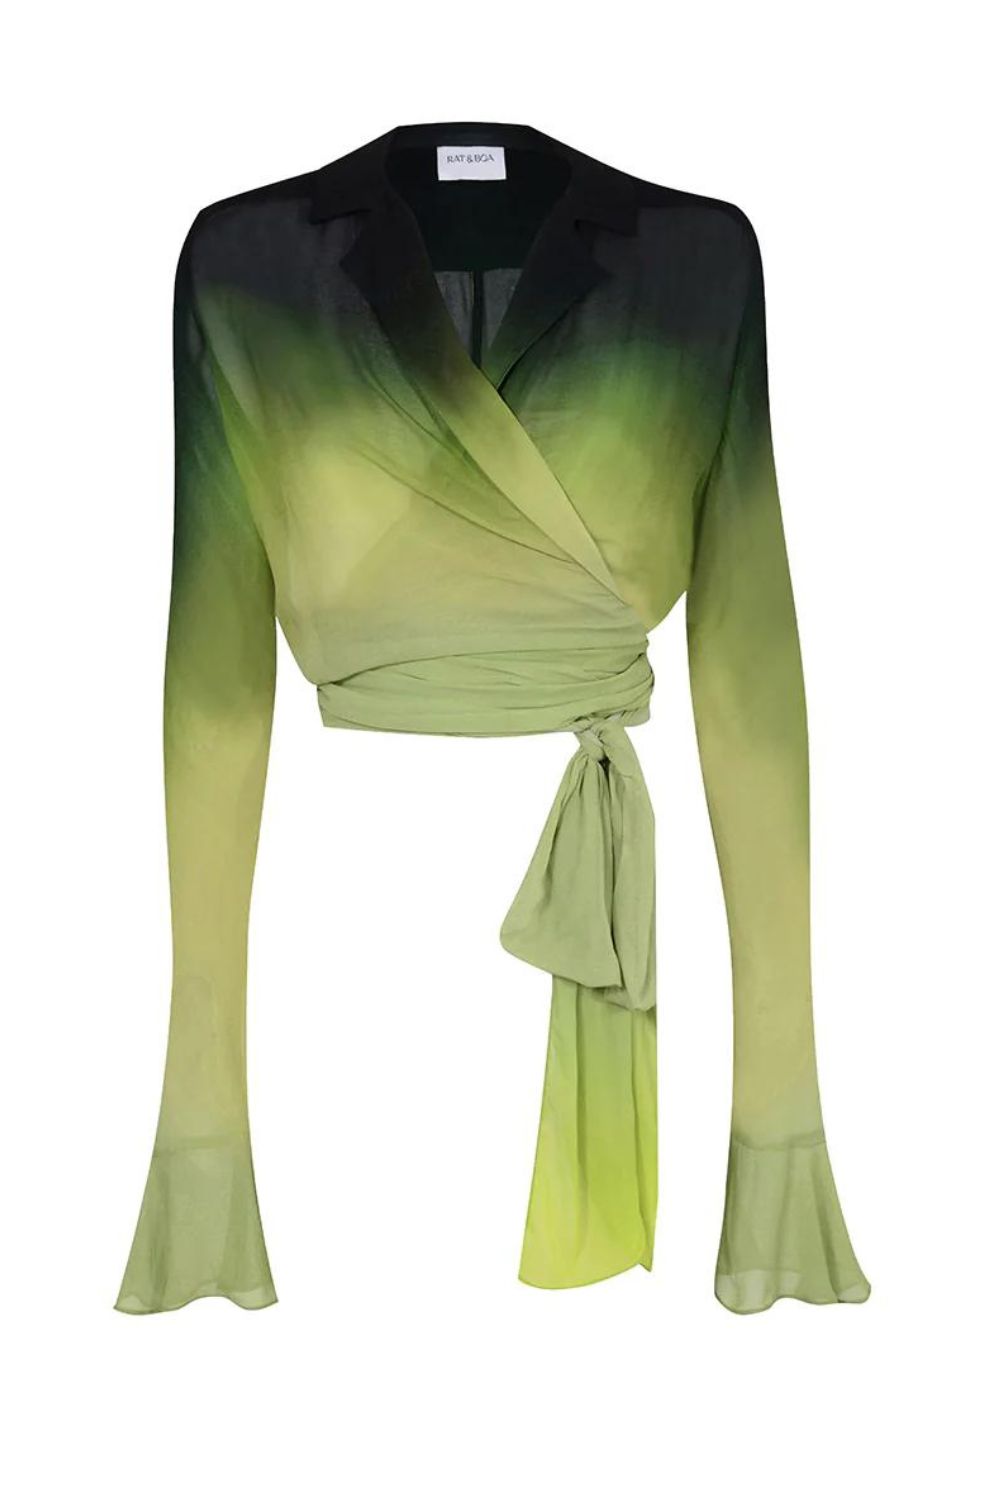 Rat & Boa | Cypress Skirt & Shirt | Green